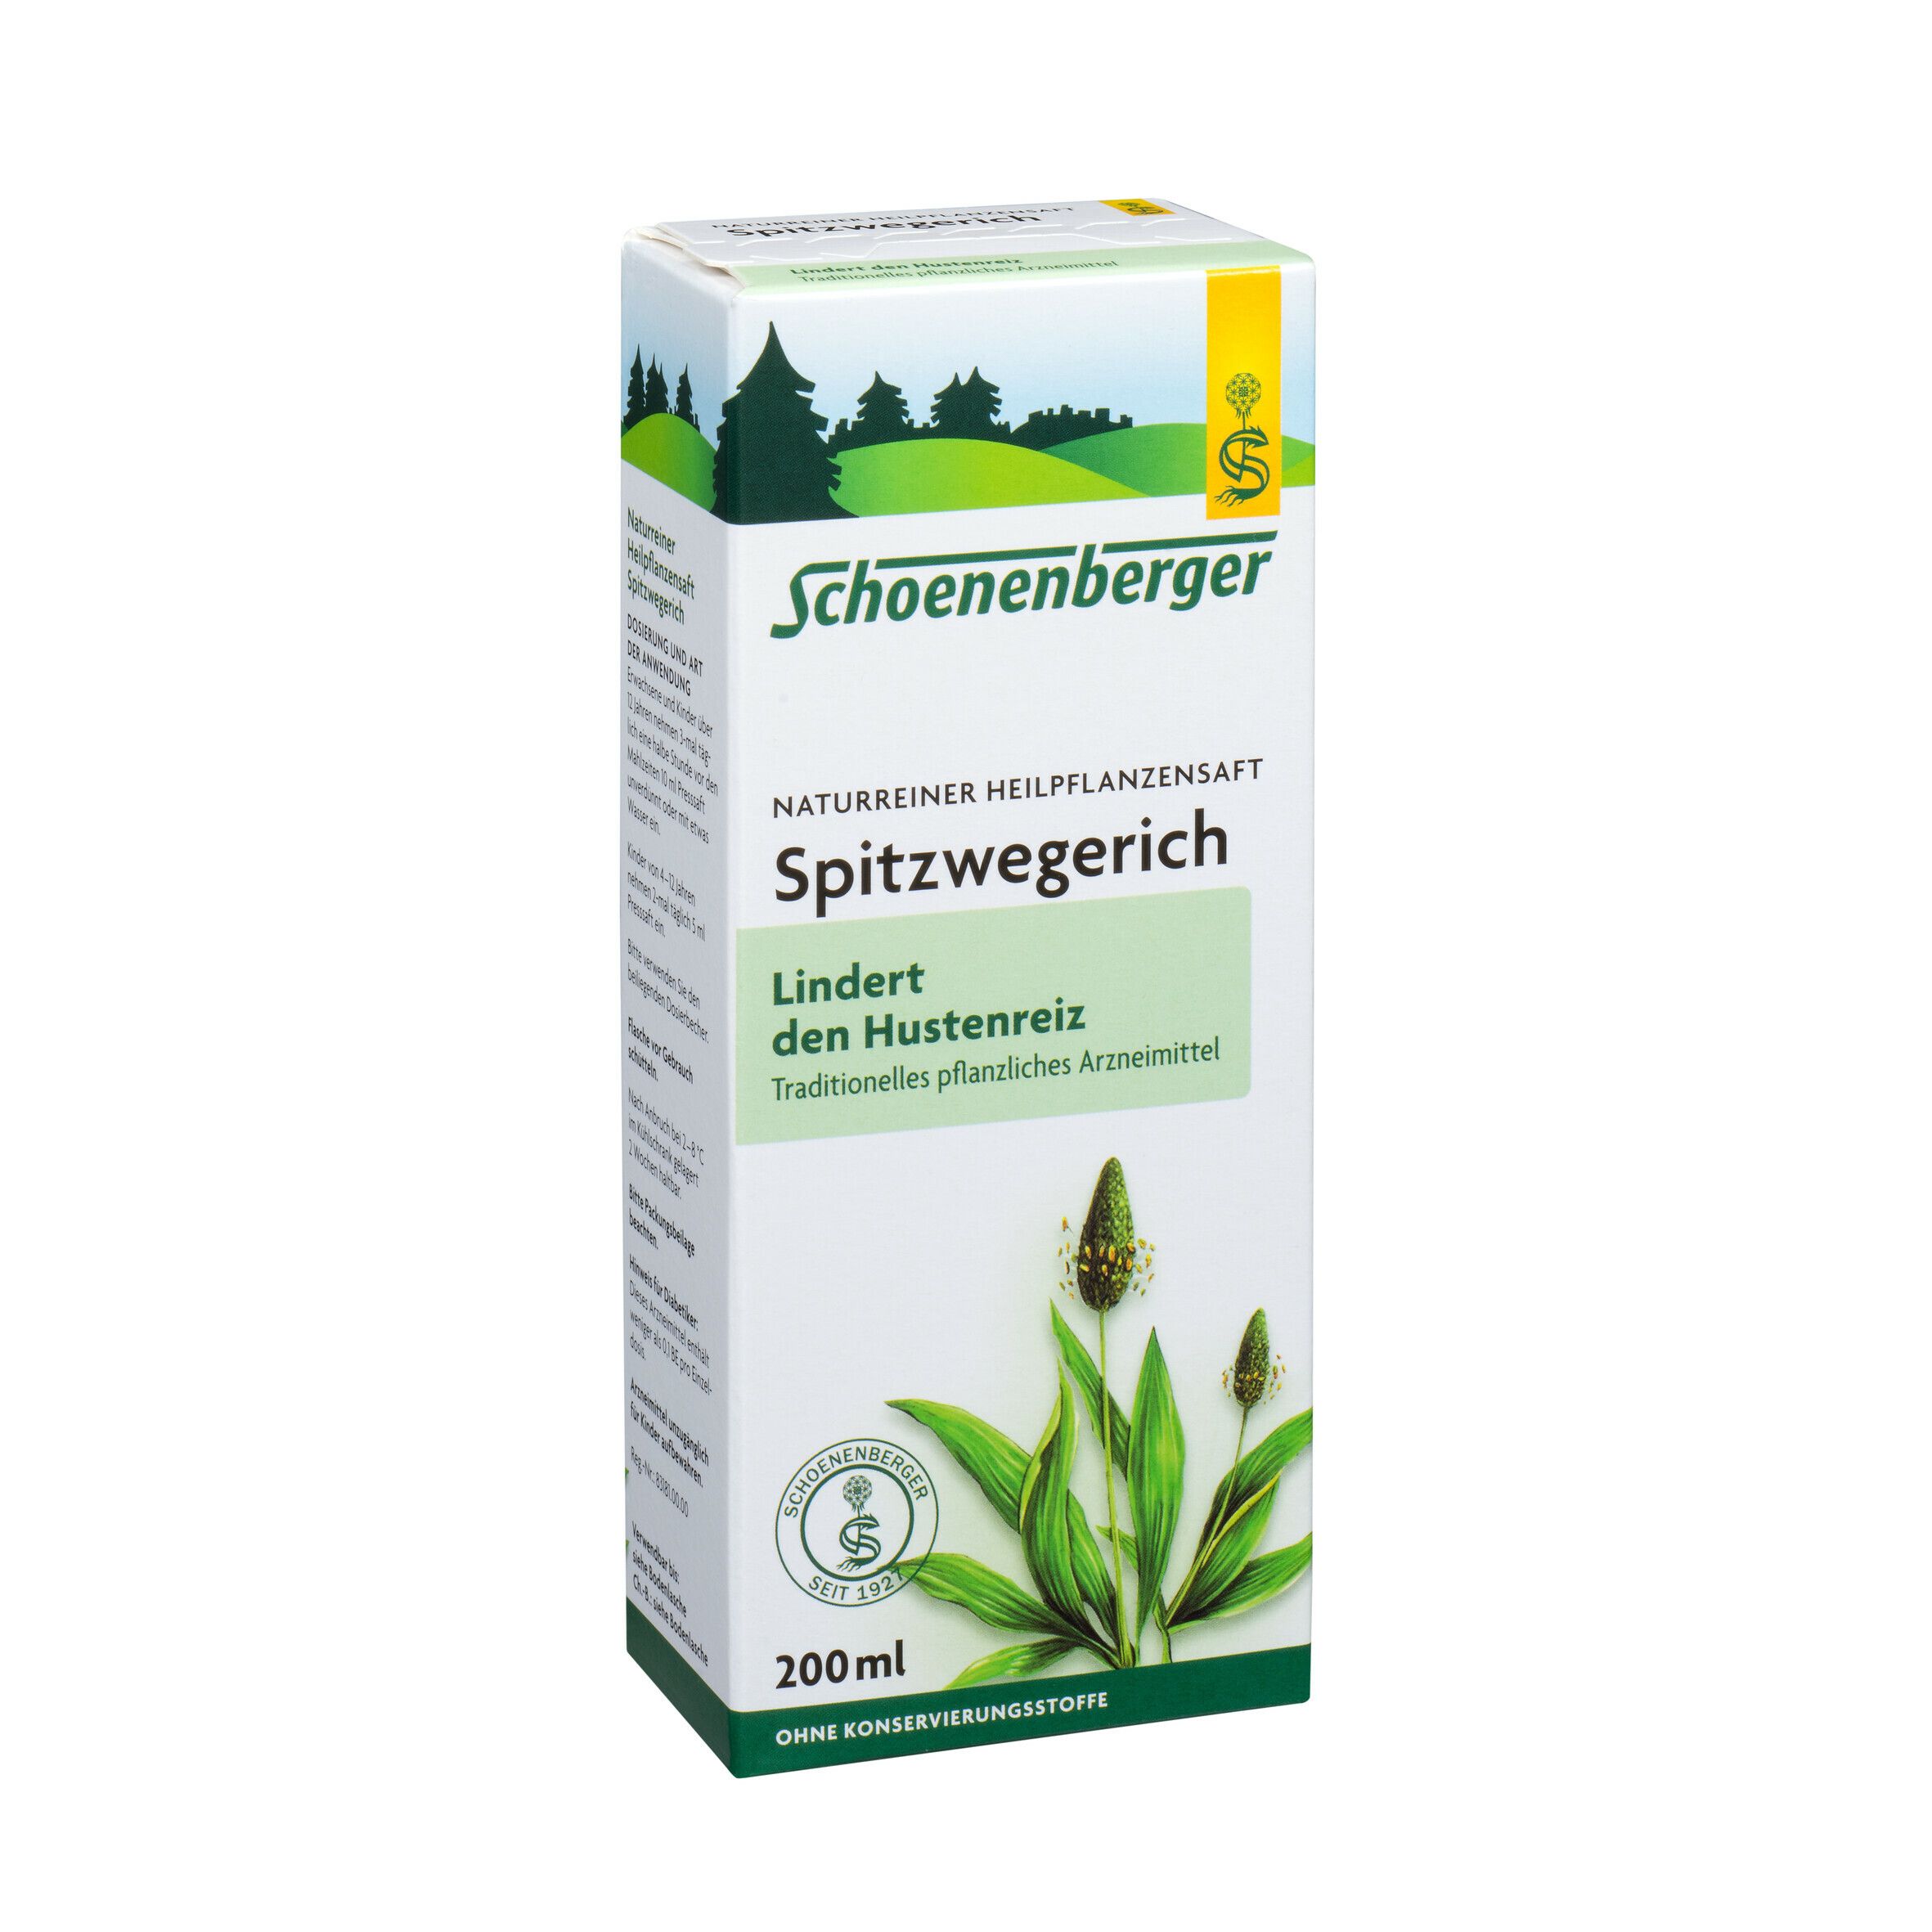 Schoenenberger® naturreiner Heilpflanzensaft Spitzwegerich